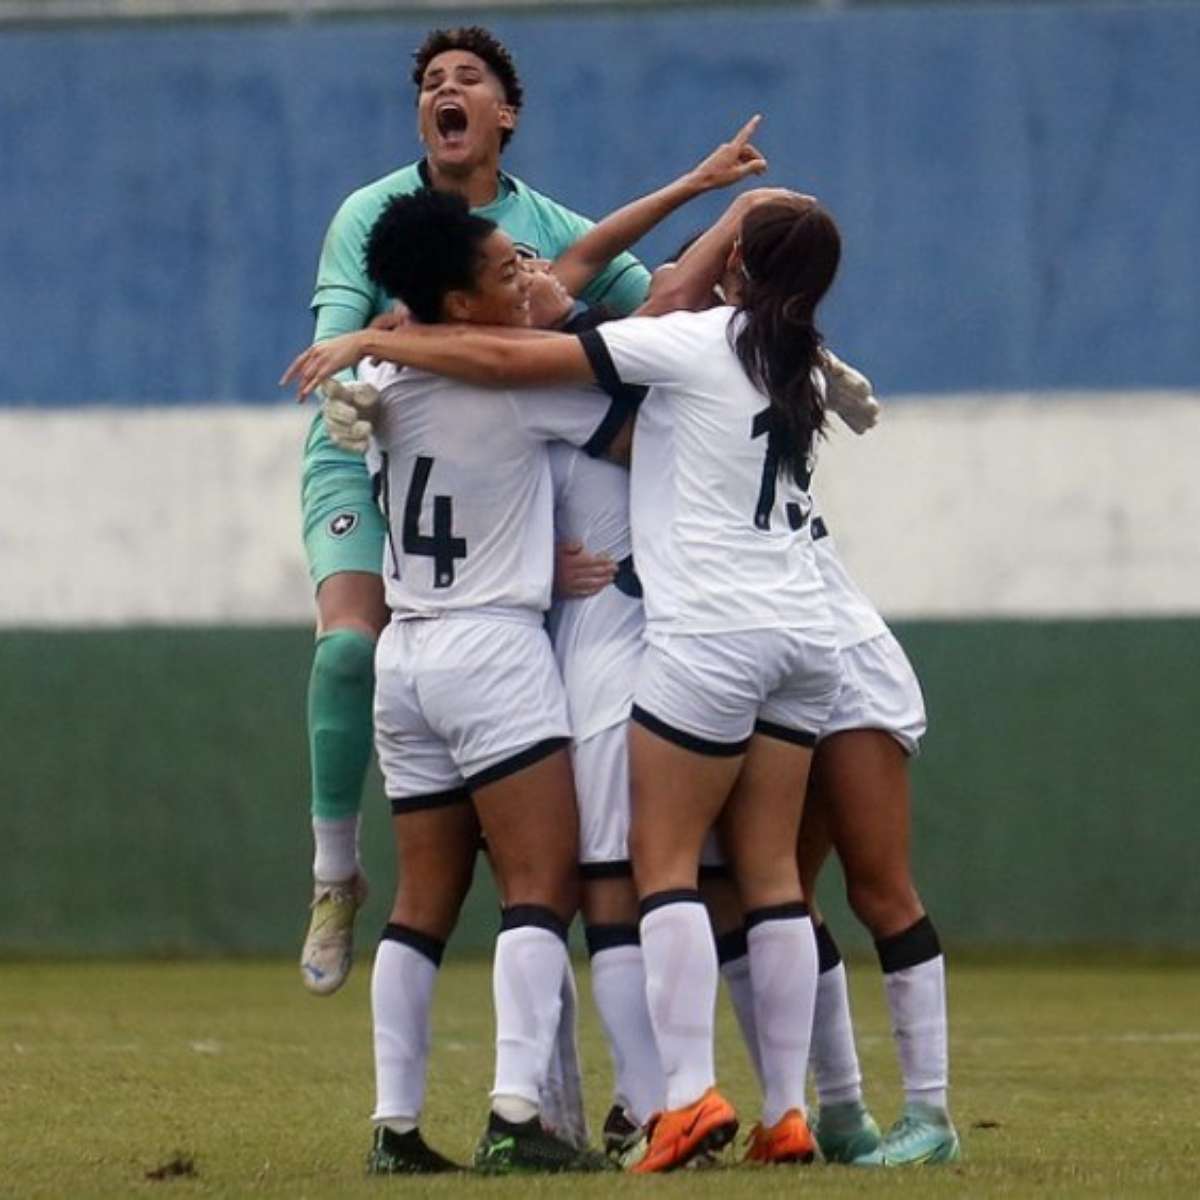 Dominante, Botafogo vira sobre o Vasco e estreia com vitória no Campeonato Brasileiro  Feminino A2 - FogãoNET